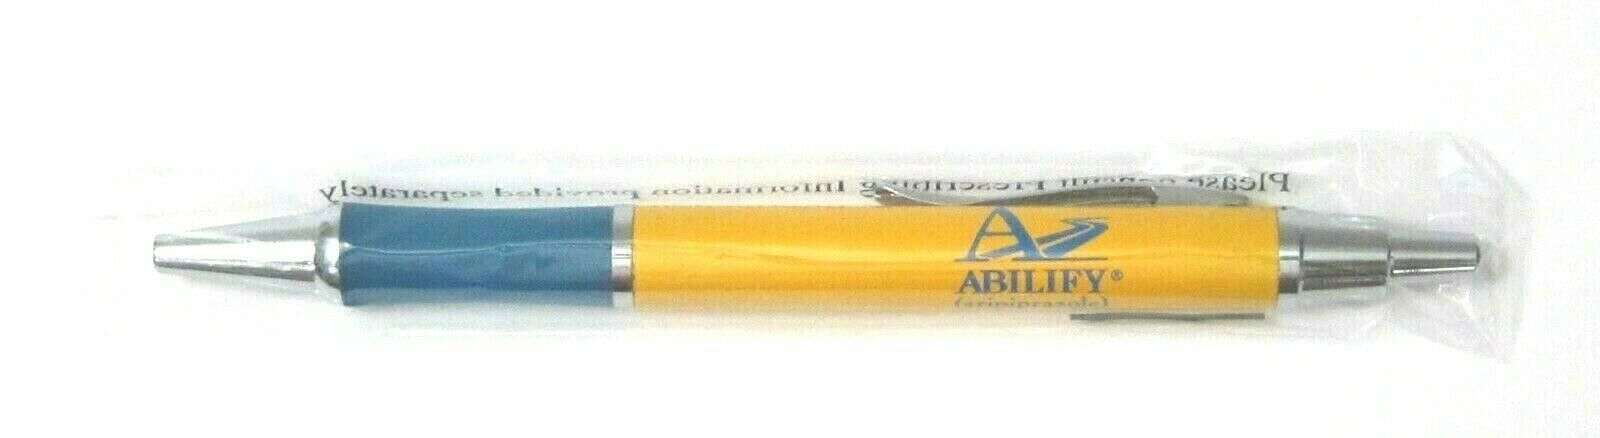 Drug Rep Abilify Collectible Metal Pen Rare